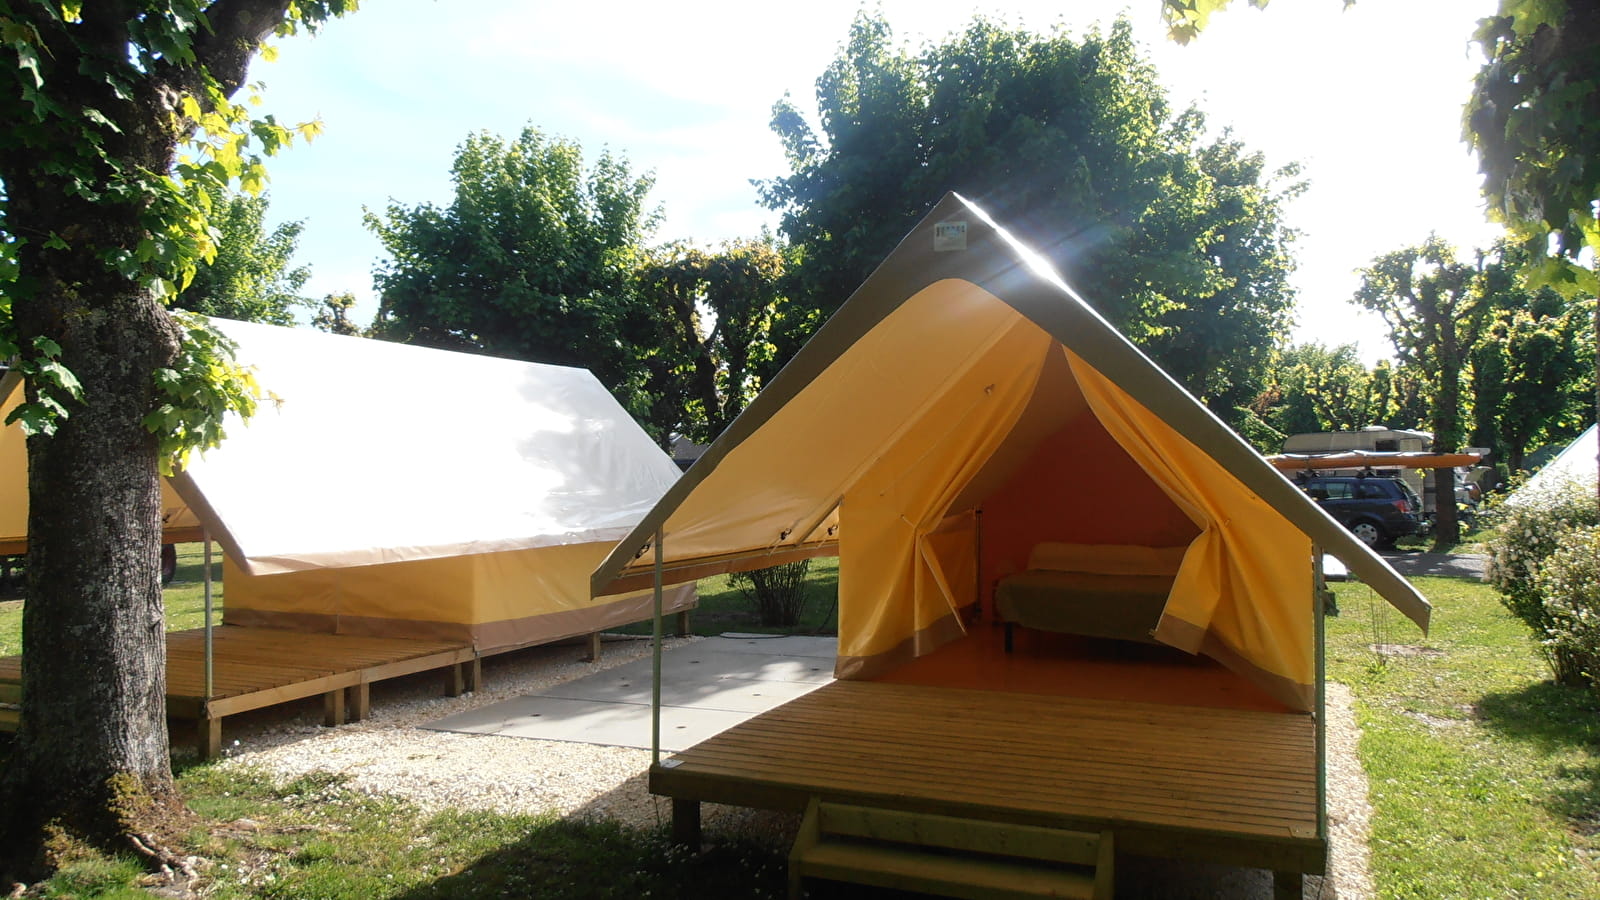 Les tentes treks - Camping de la saulaie